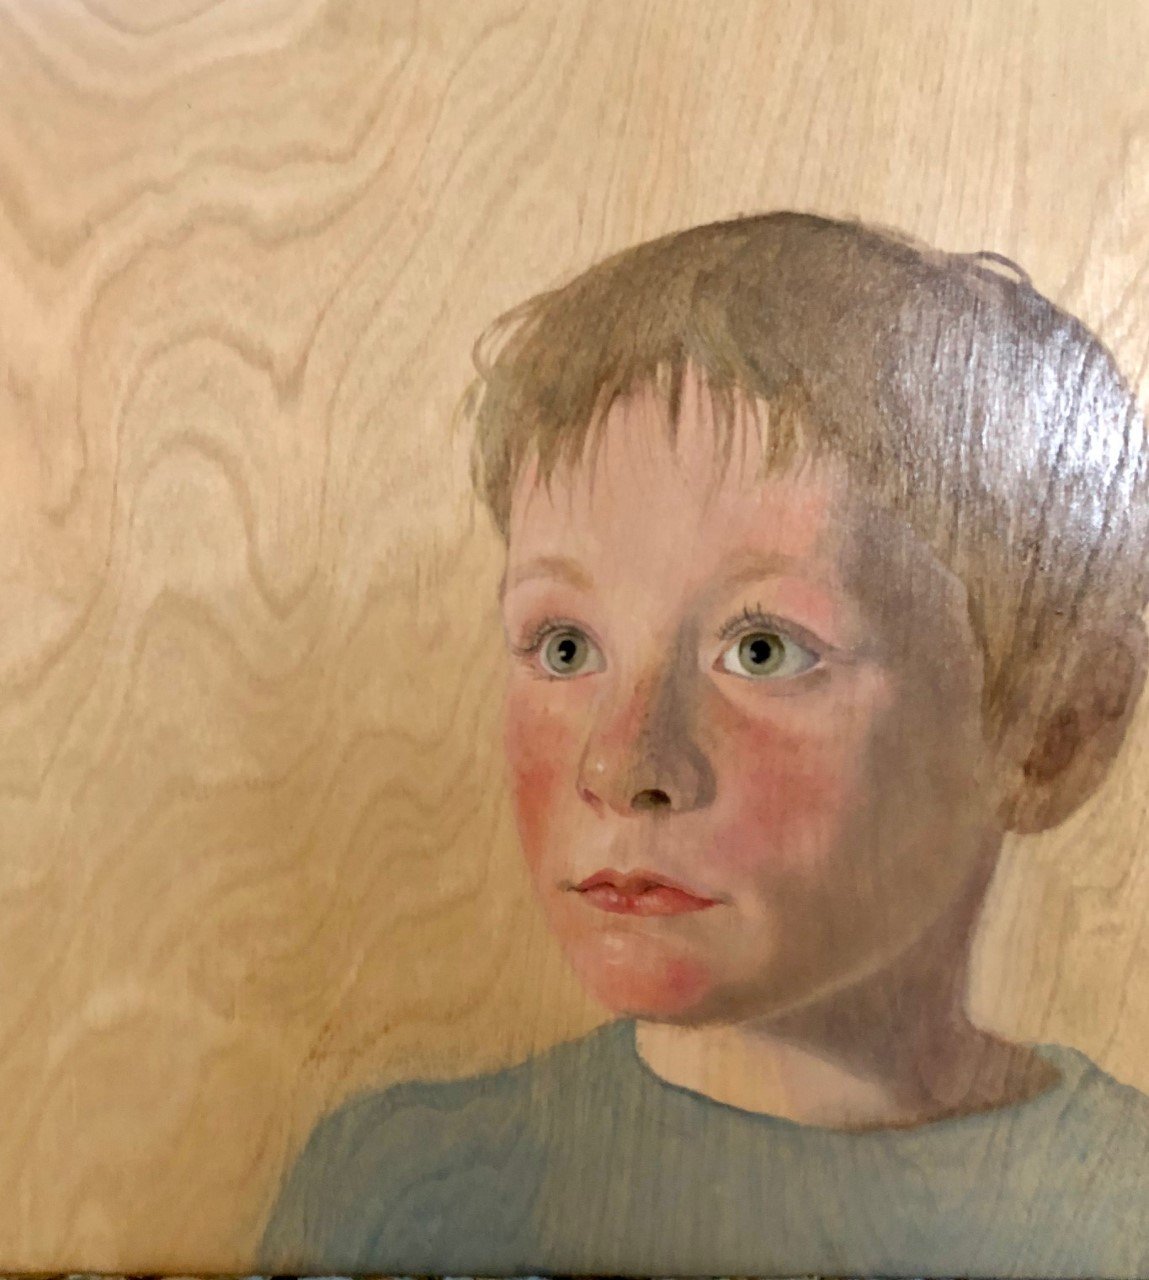    Charles  , 12” x 12”, oil on wood 